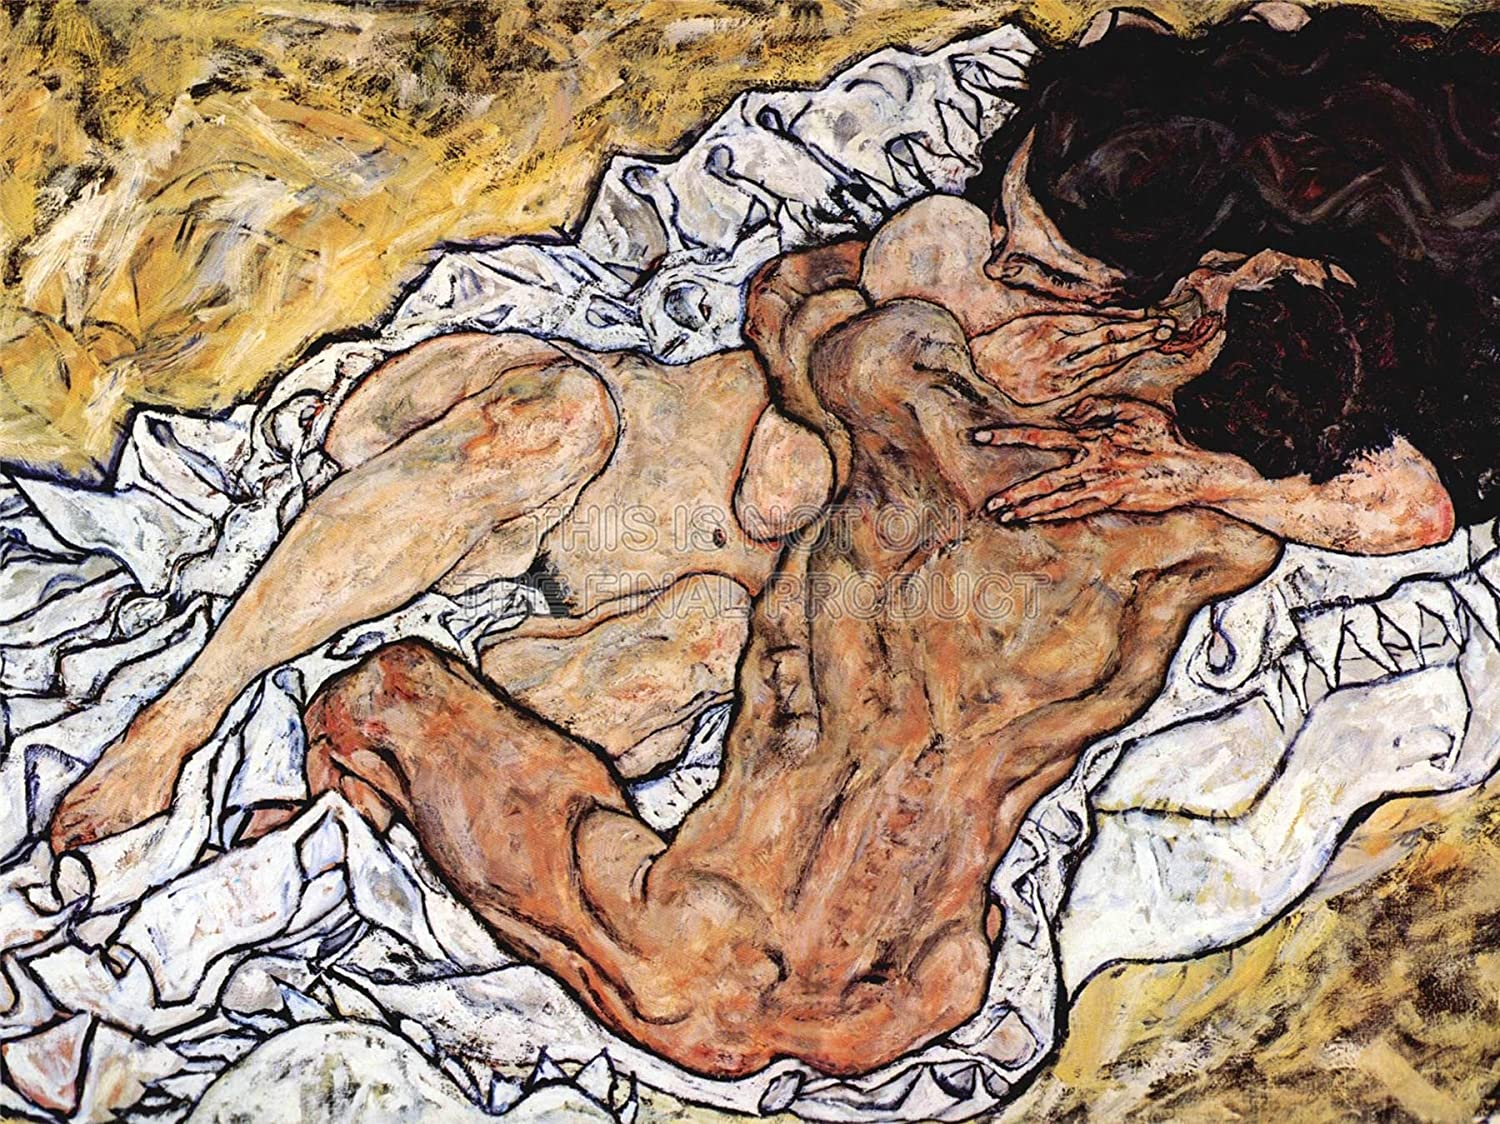 The embrace - Schiele 1917